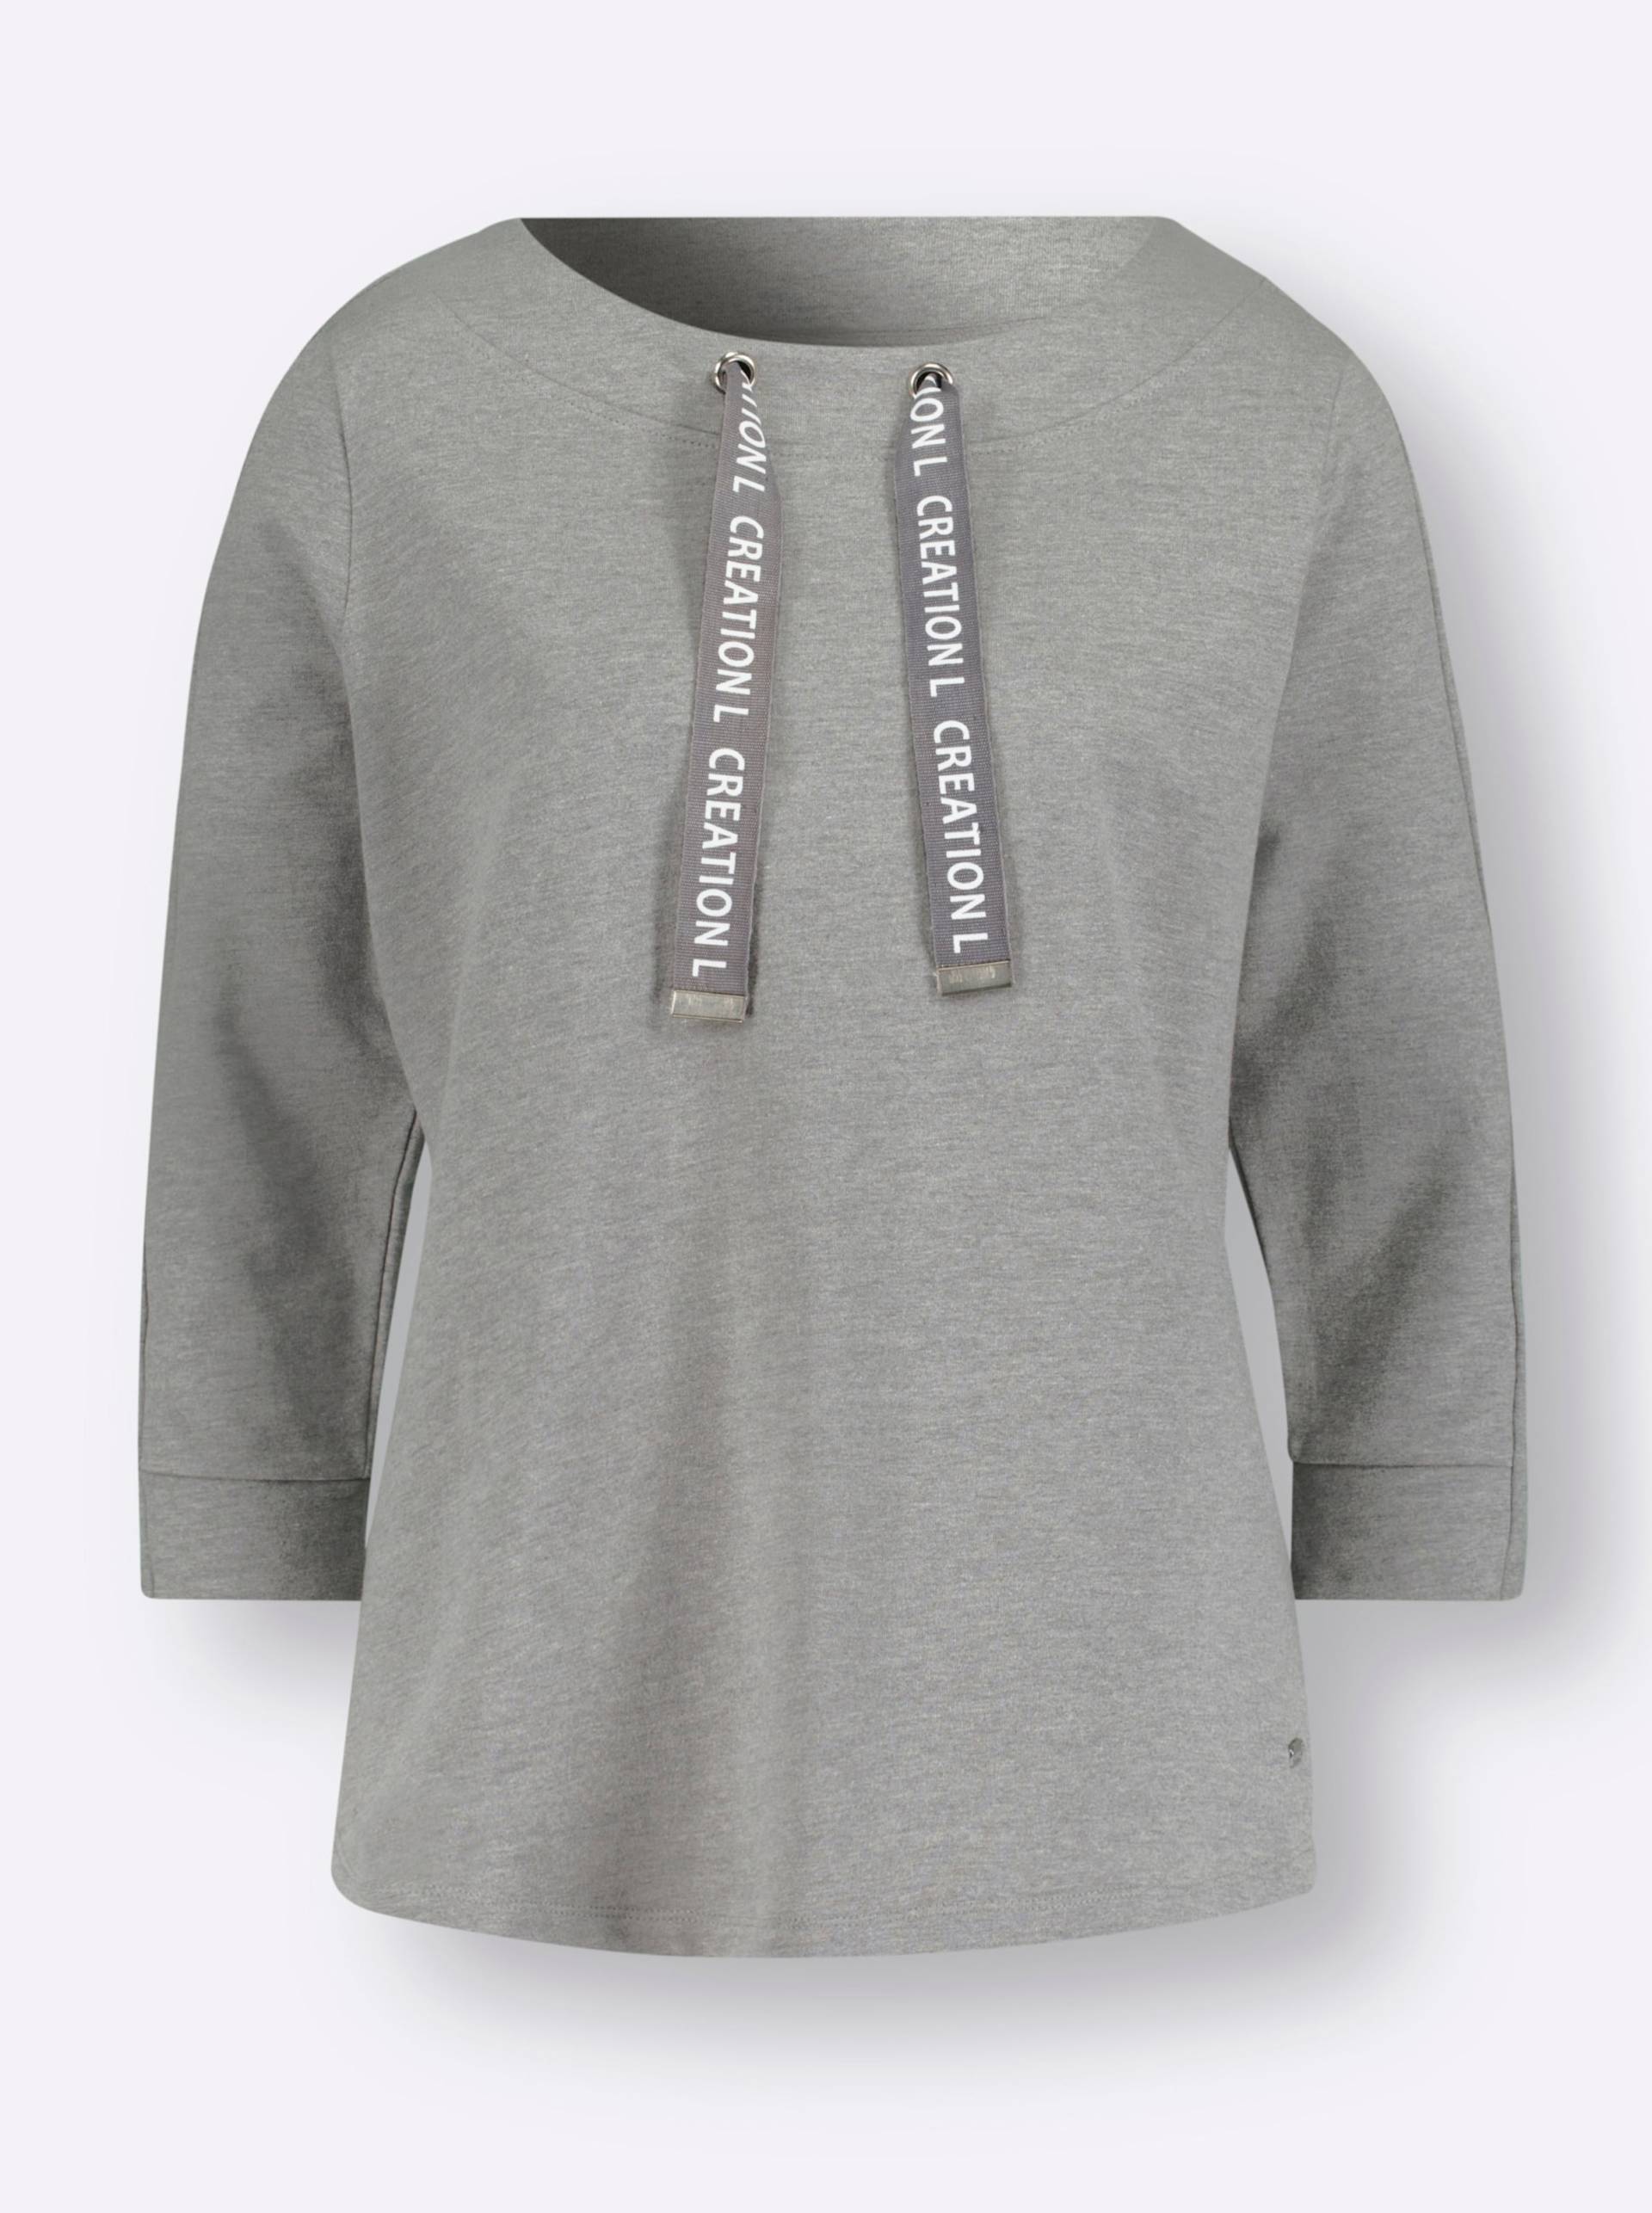 Sweatshirt in grau-meliert von heine